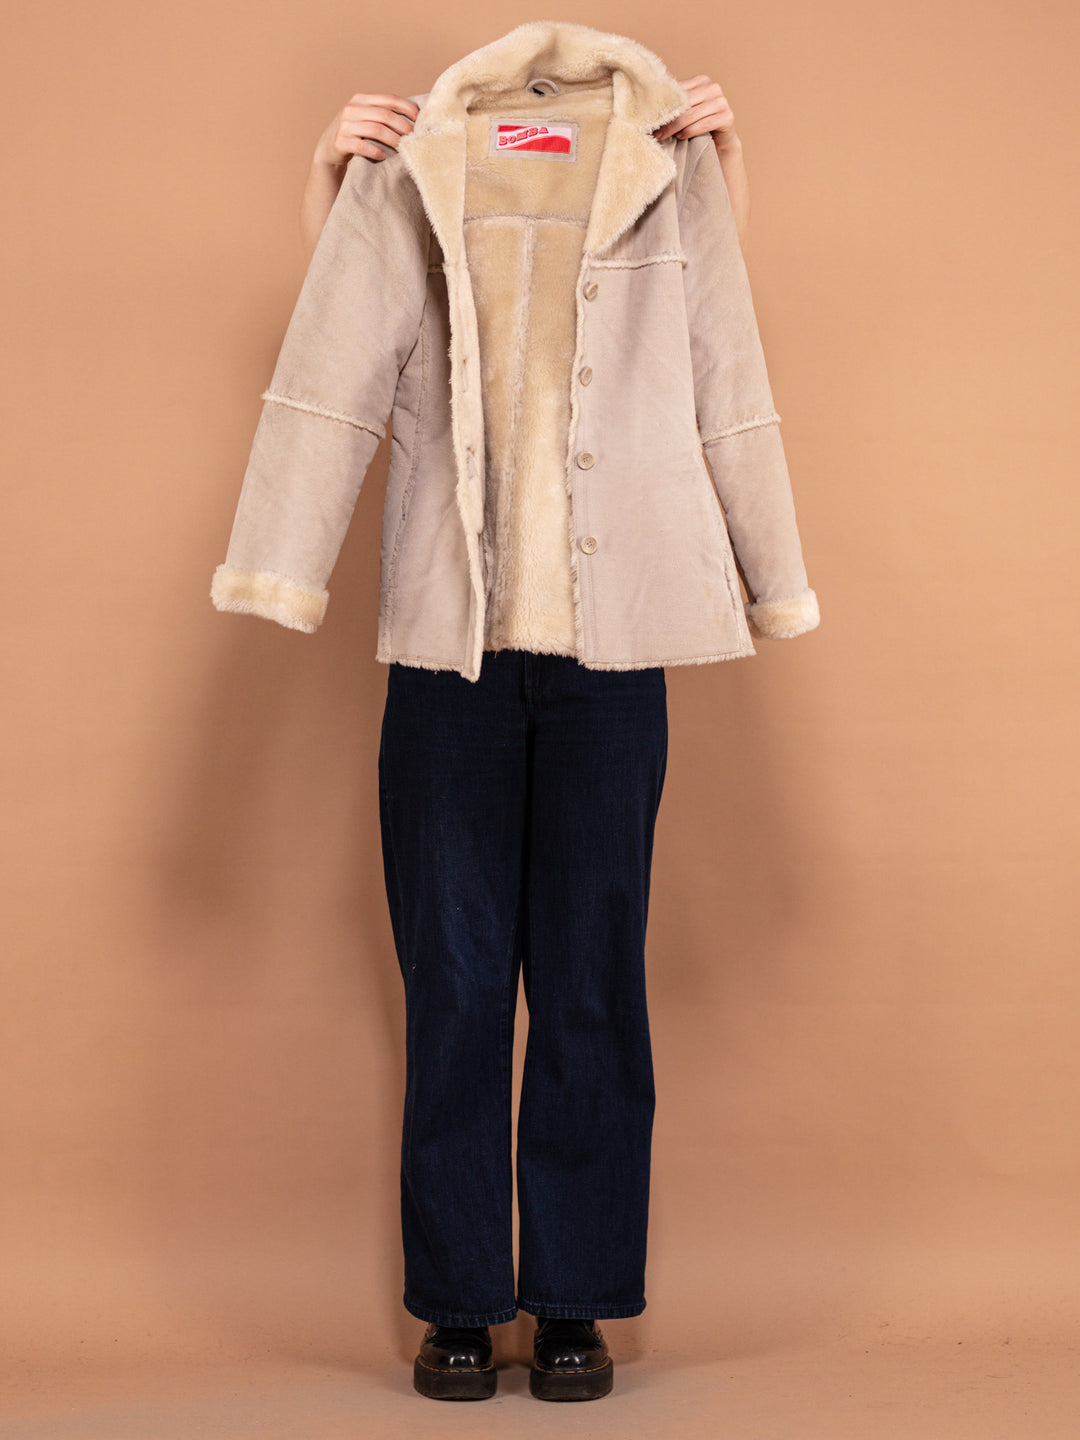 Beige Suede Sherpa Coat 90s, Size Small, Y2K Penny Lane Style Coat, Faux Fur Lined Casual Boho Coat, Women Winter Wear, 00's Clothing